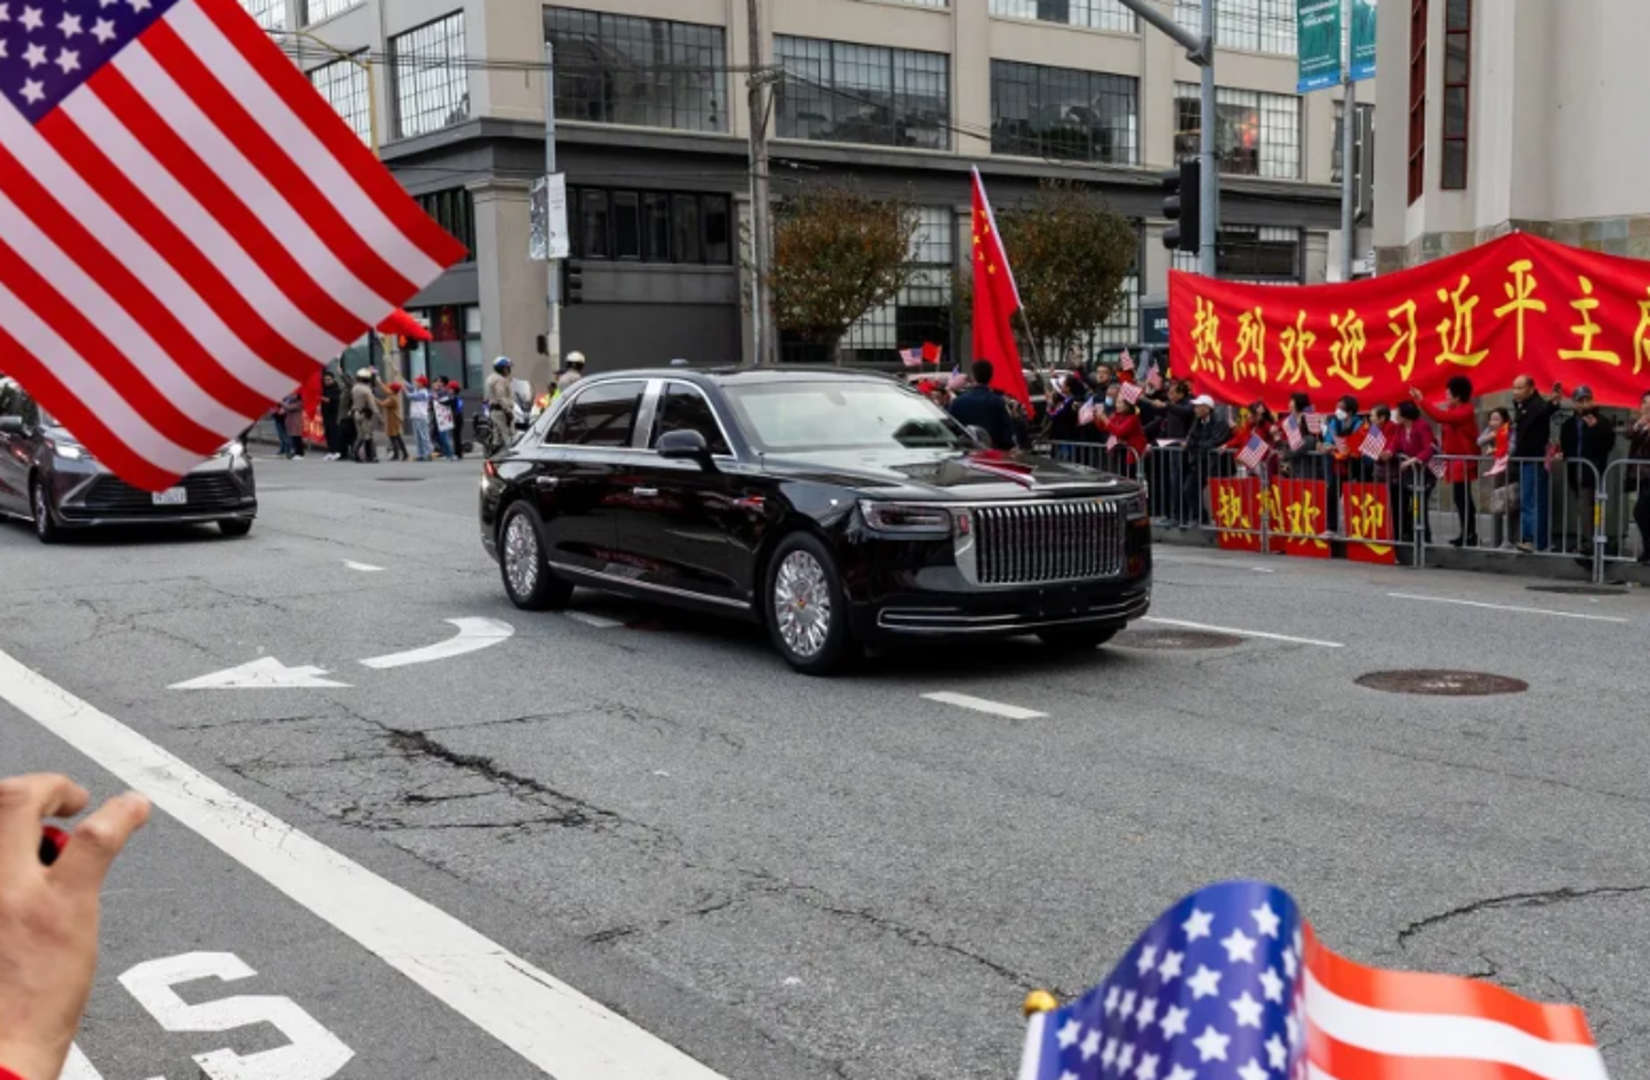 ▲미중 정상회담에 등장한 중국 시진핑 주석의 차량 / 출처 m투데이 오토